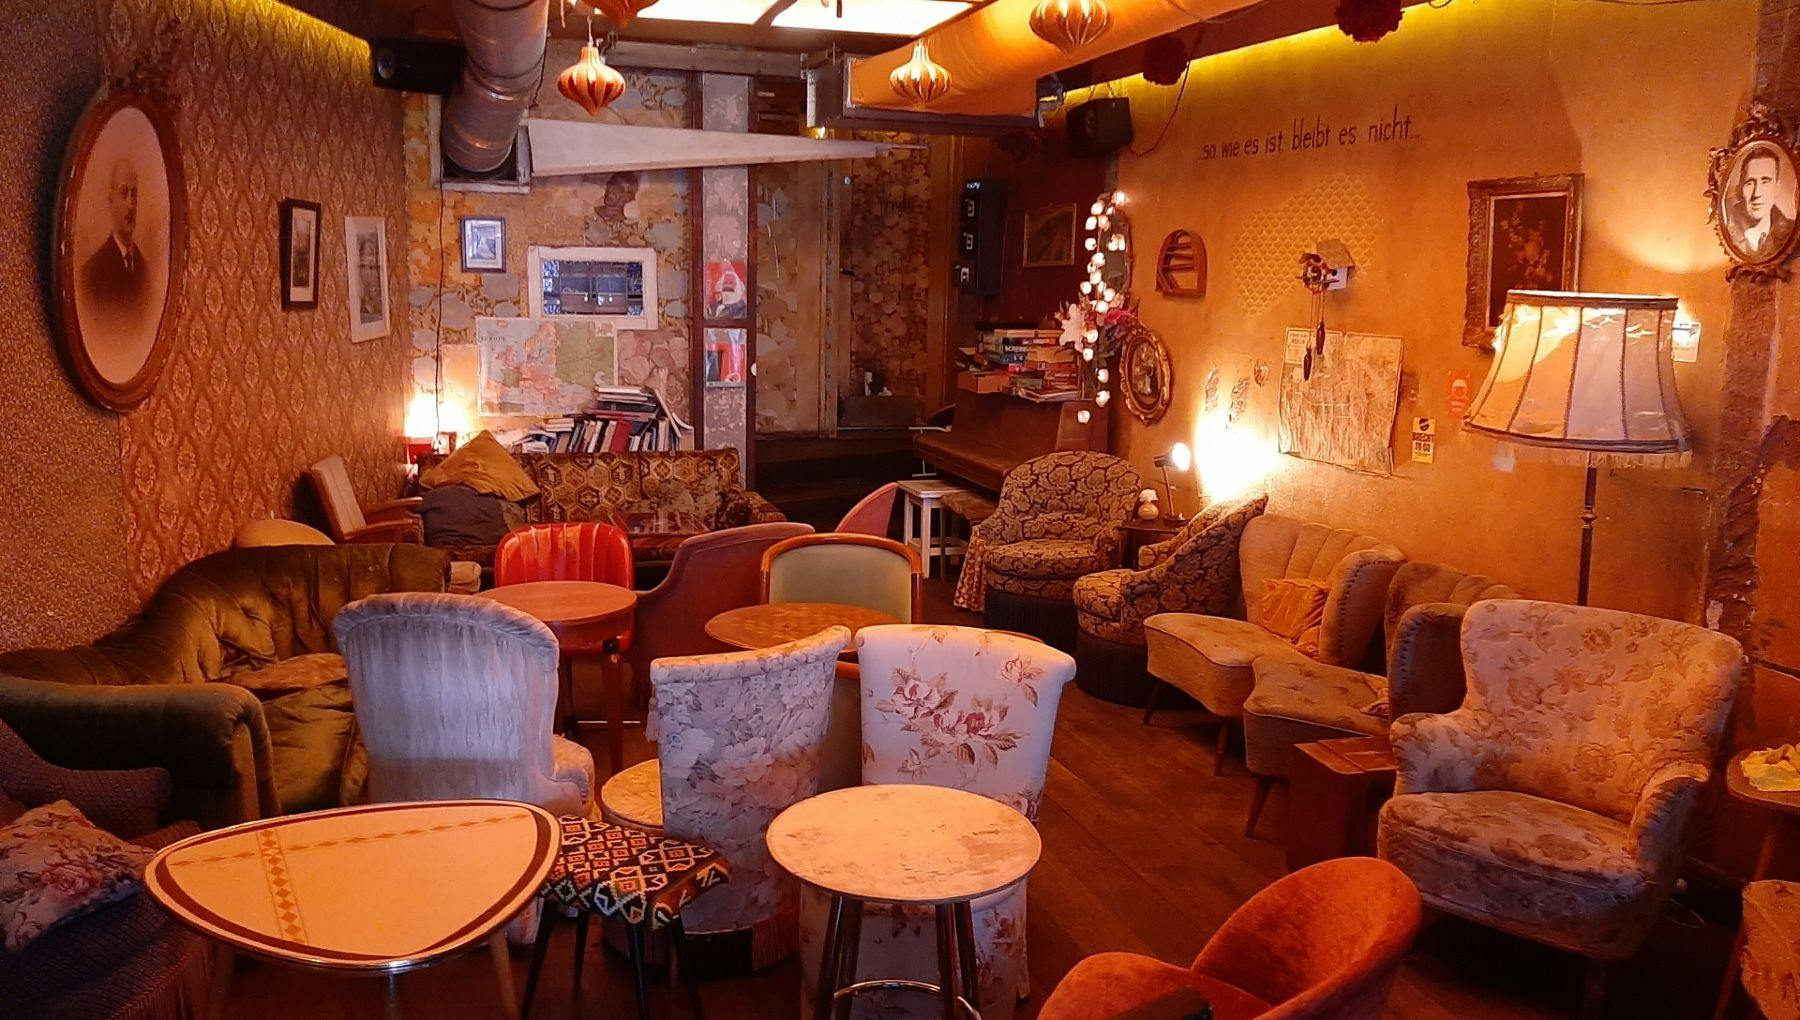 Café Brecht interior